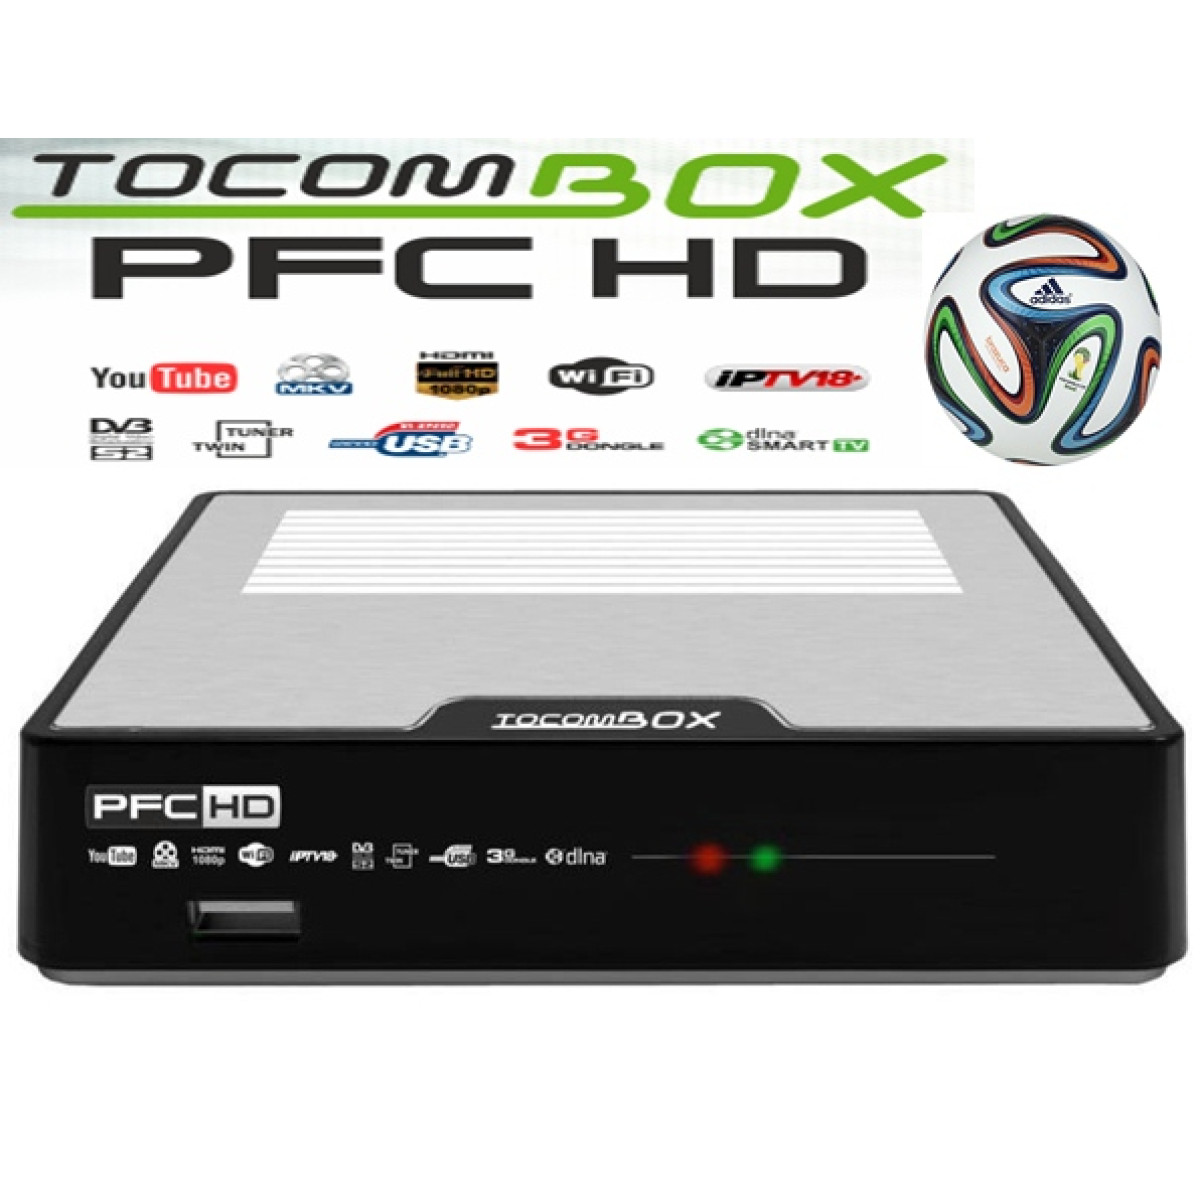 Tocombox PFC HD Atualização V4.0.1  Tocombox_pfc_6